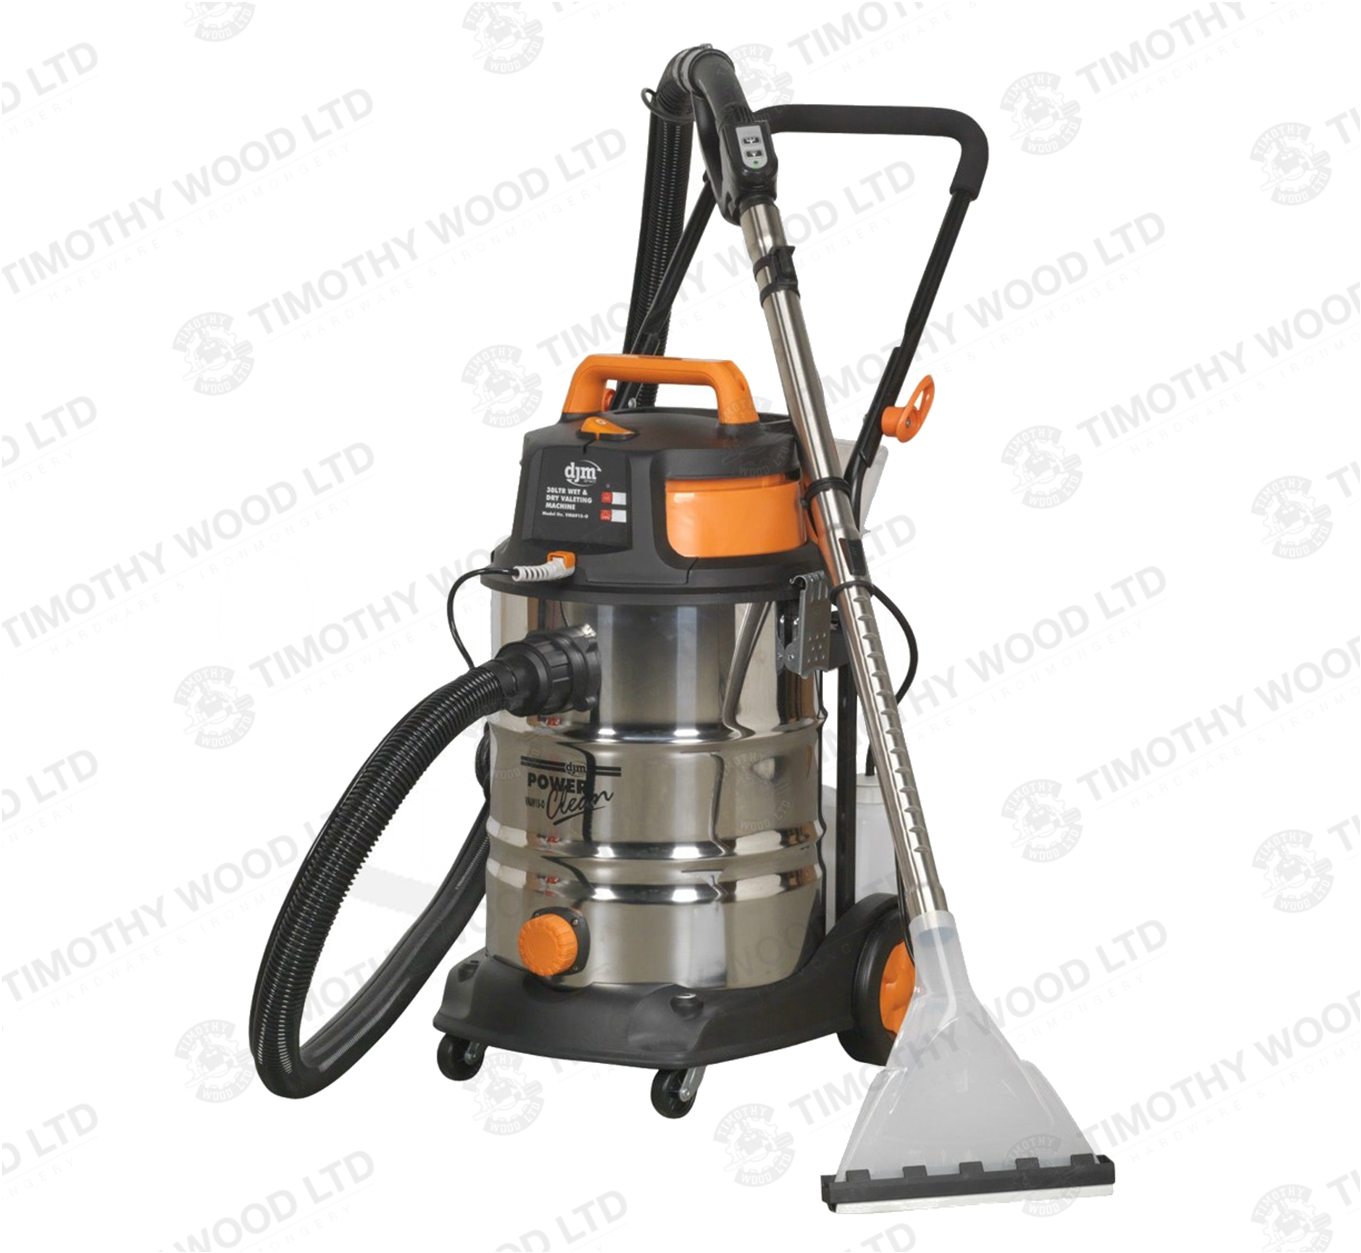 DJM VMA915 Wet & Dry Valeting Carpet Vacuum Cleaner Machine 30ltr 1500W/230V